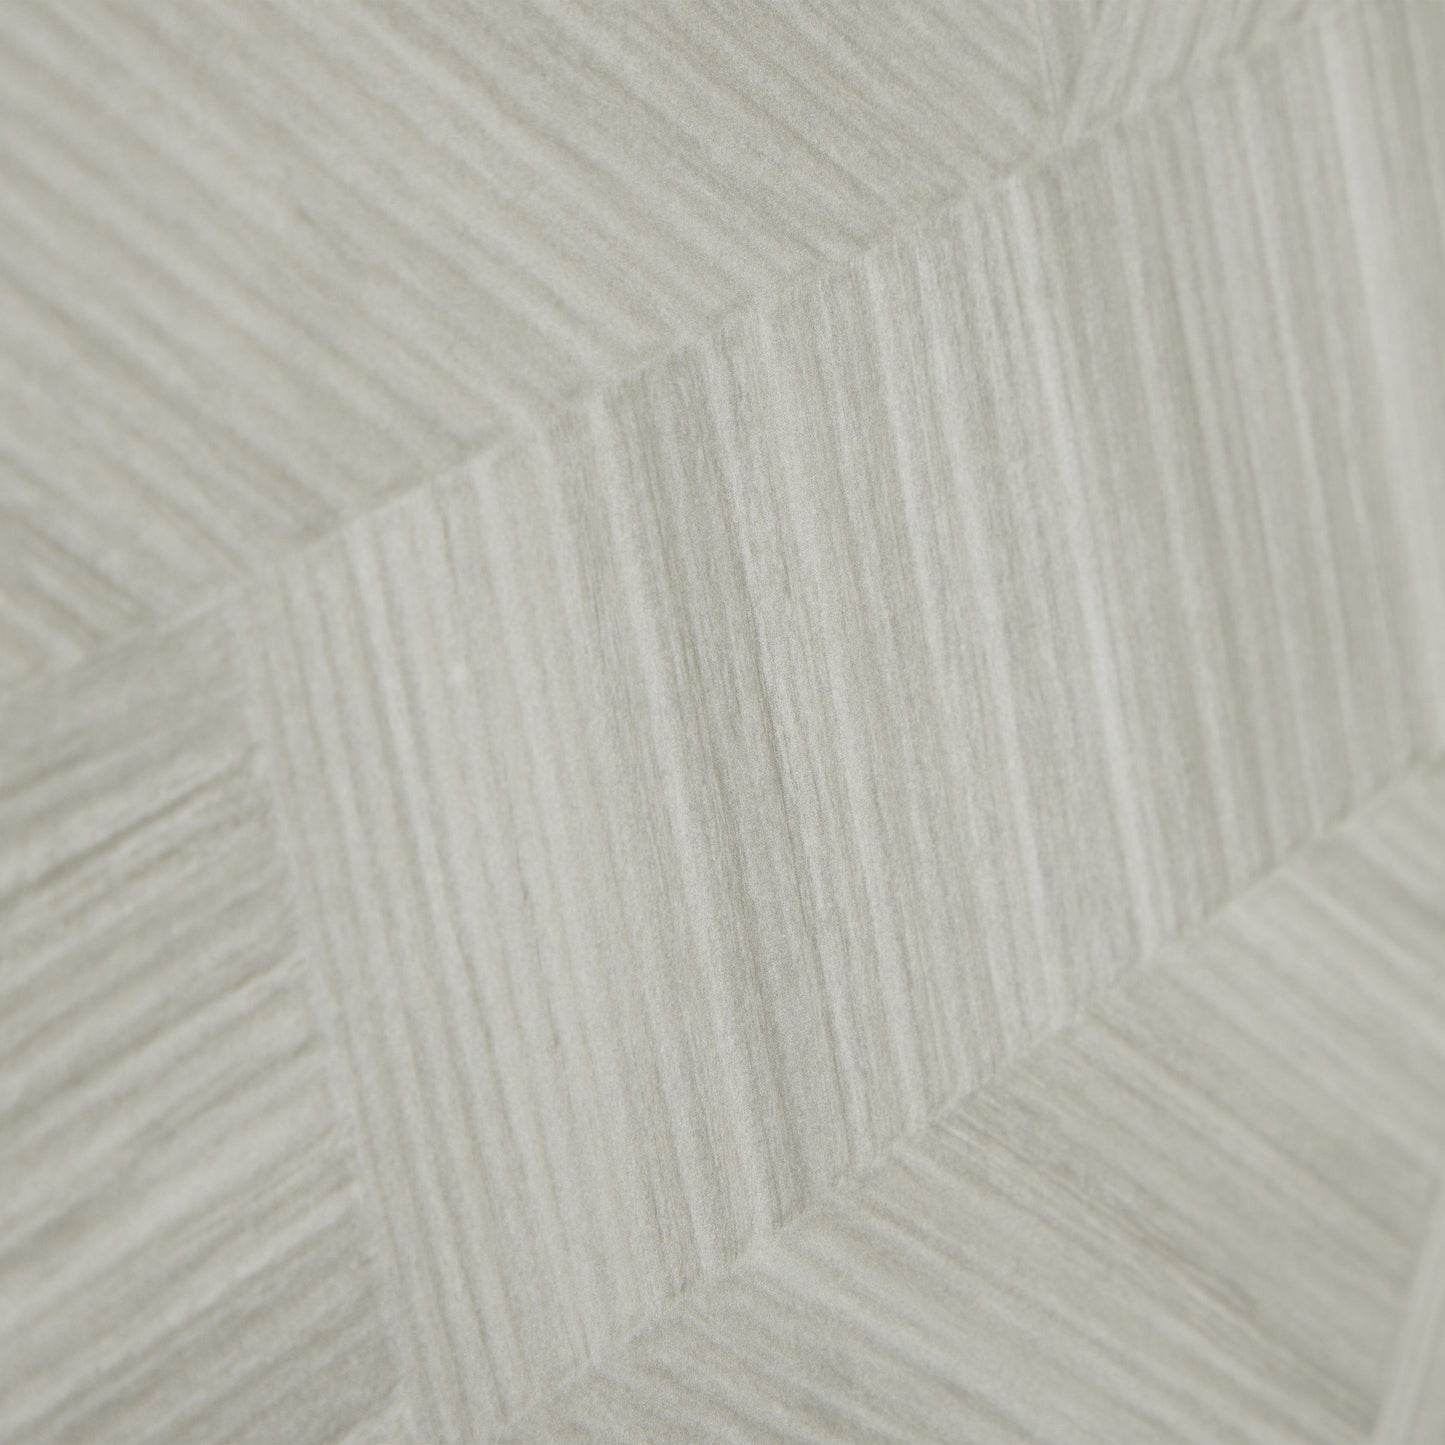 24x48 Designer 3d wood look porcelain tile - Gray - Industry Tile